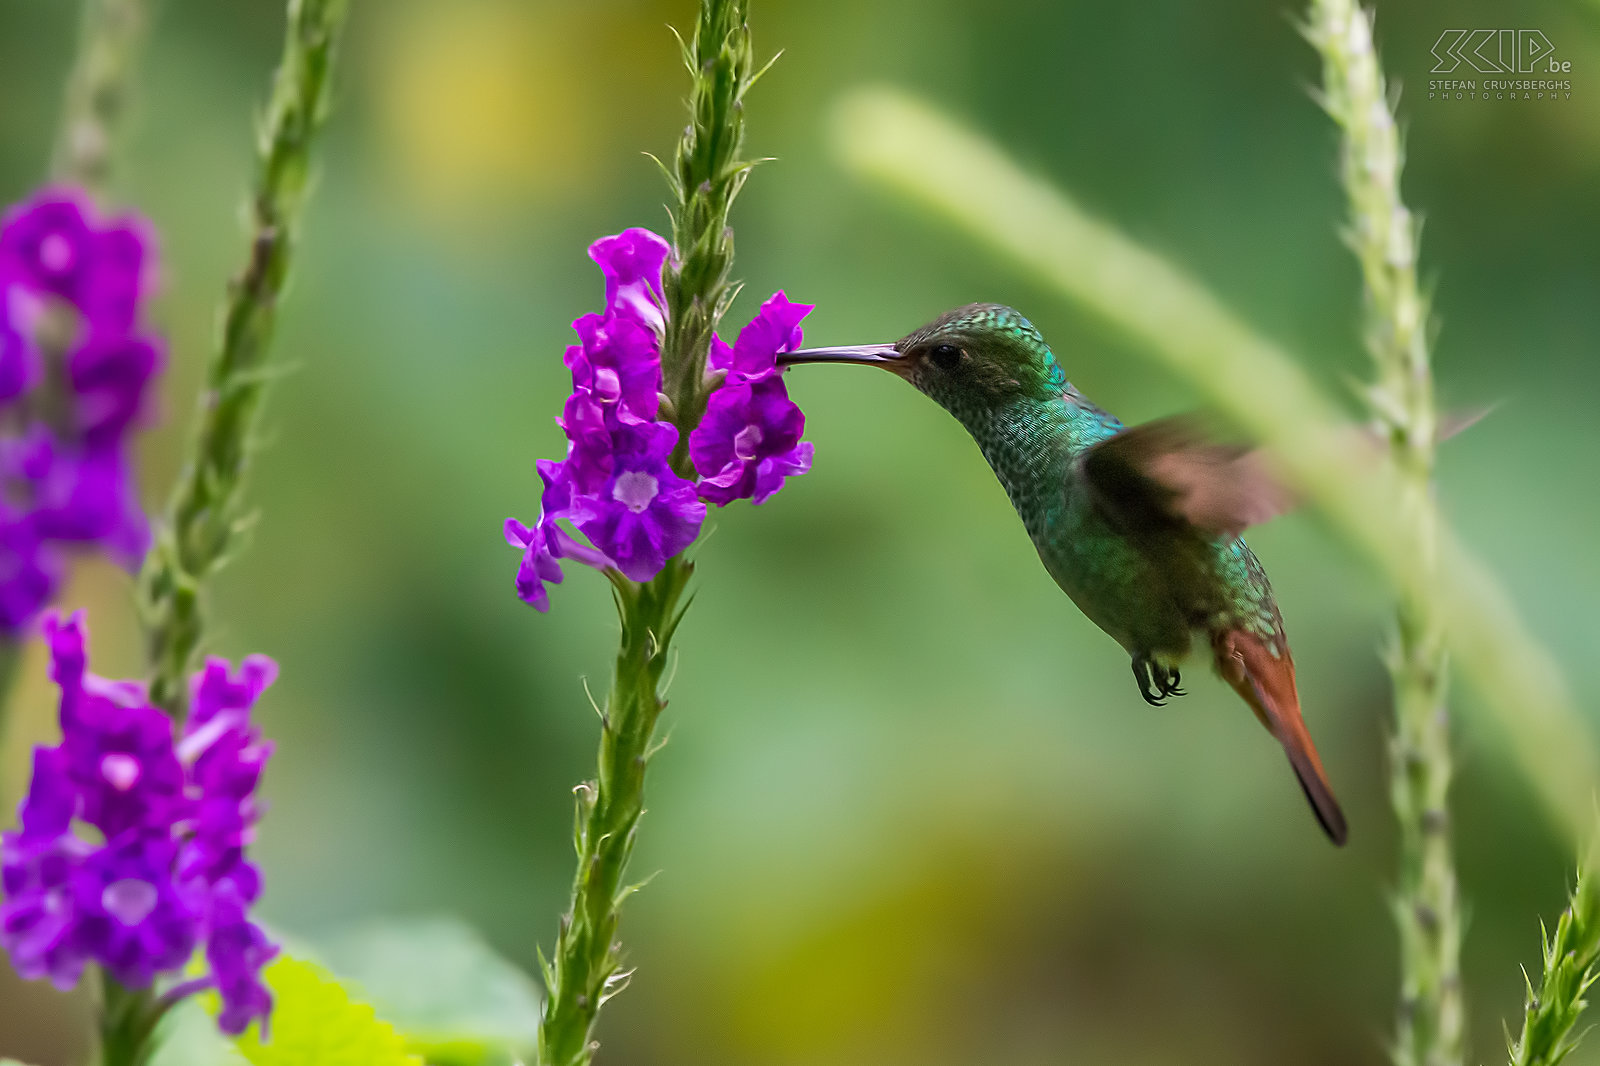 Arenal - Roodstaartamazilia Foto van een vliegende Roodstaartamazilia (Rufous-tailed hummingbird/Amazilia tzacatl). Kolibries hebben tijdens de vlucht het hoogste metabolisme van alle diersoorten. Hun hartslag kan oplopen tot 1260 slagen per minuut en ze slaan hun vleugels 15 tot 80 keer per seconde. Kolibries vliegen continu rond en het drinken nectar uit bloemen. Ze verbruiken meer nectar dan hun eigen gewicht per dag.<br />
 Stefan Cruysberghs